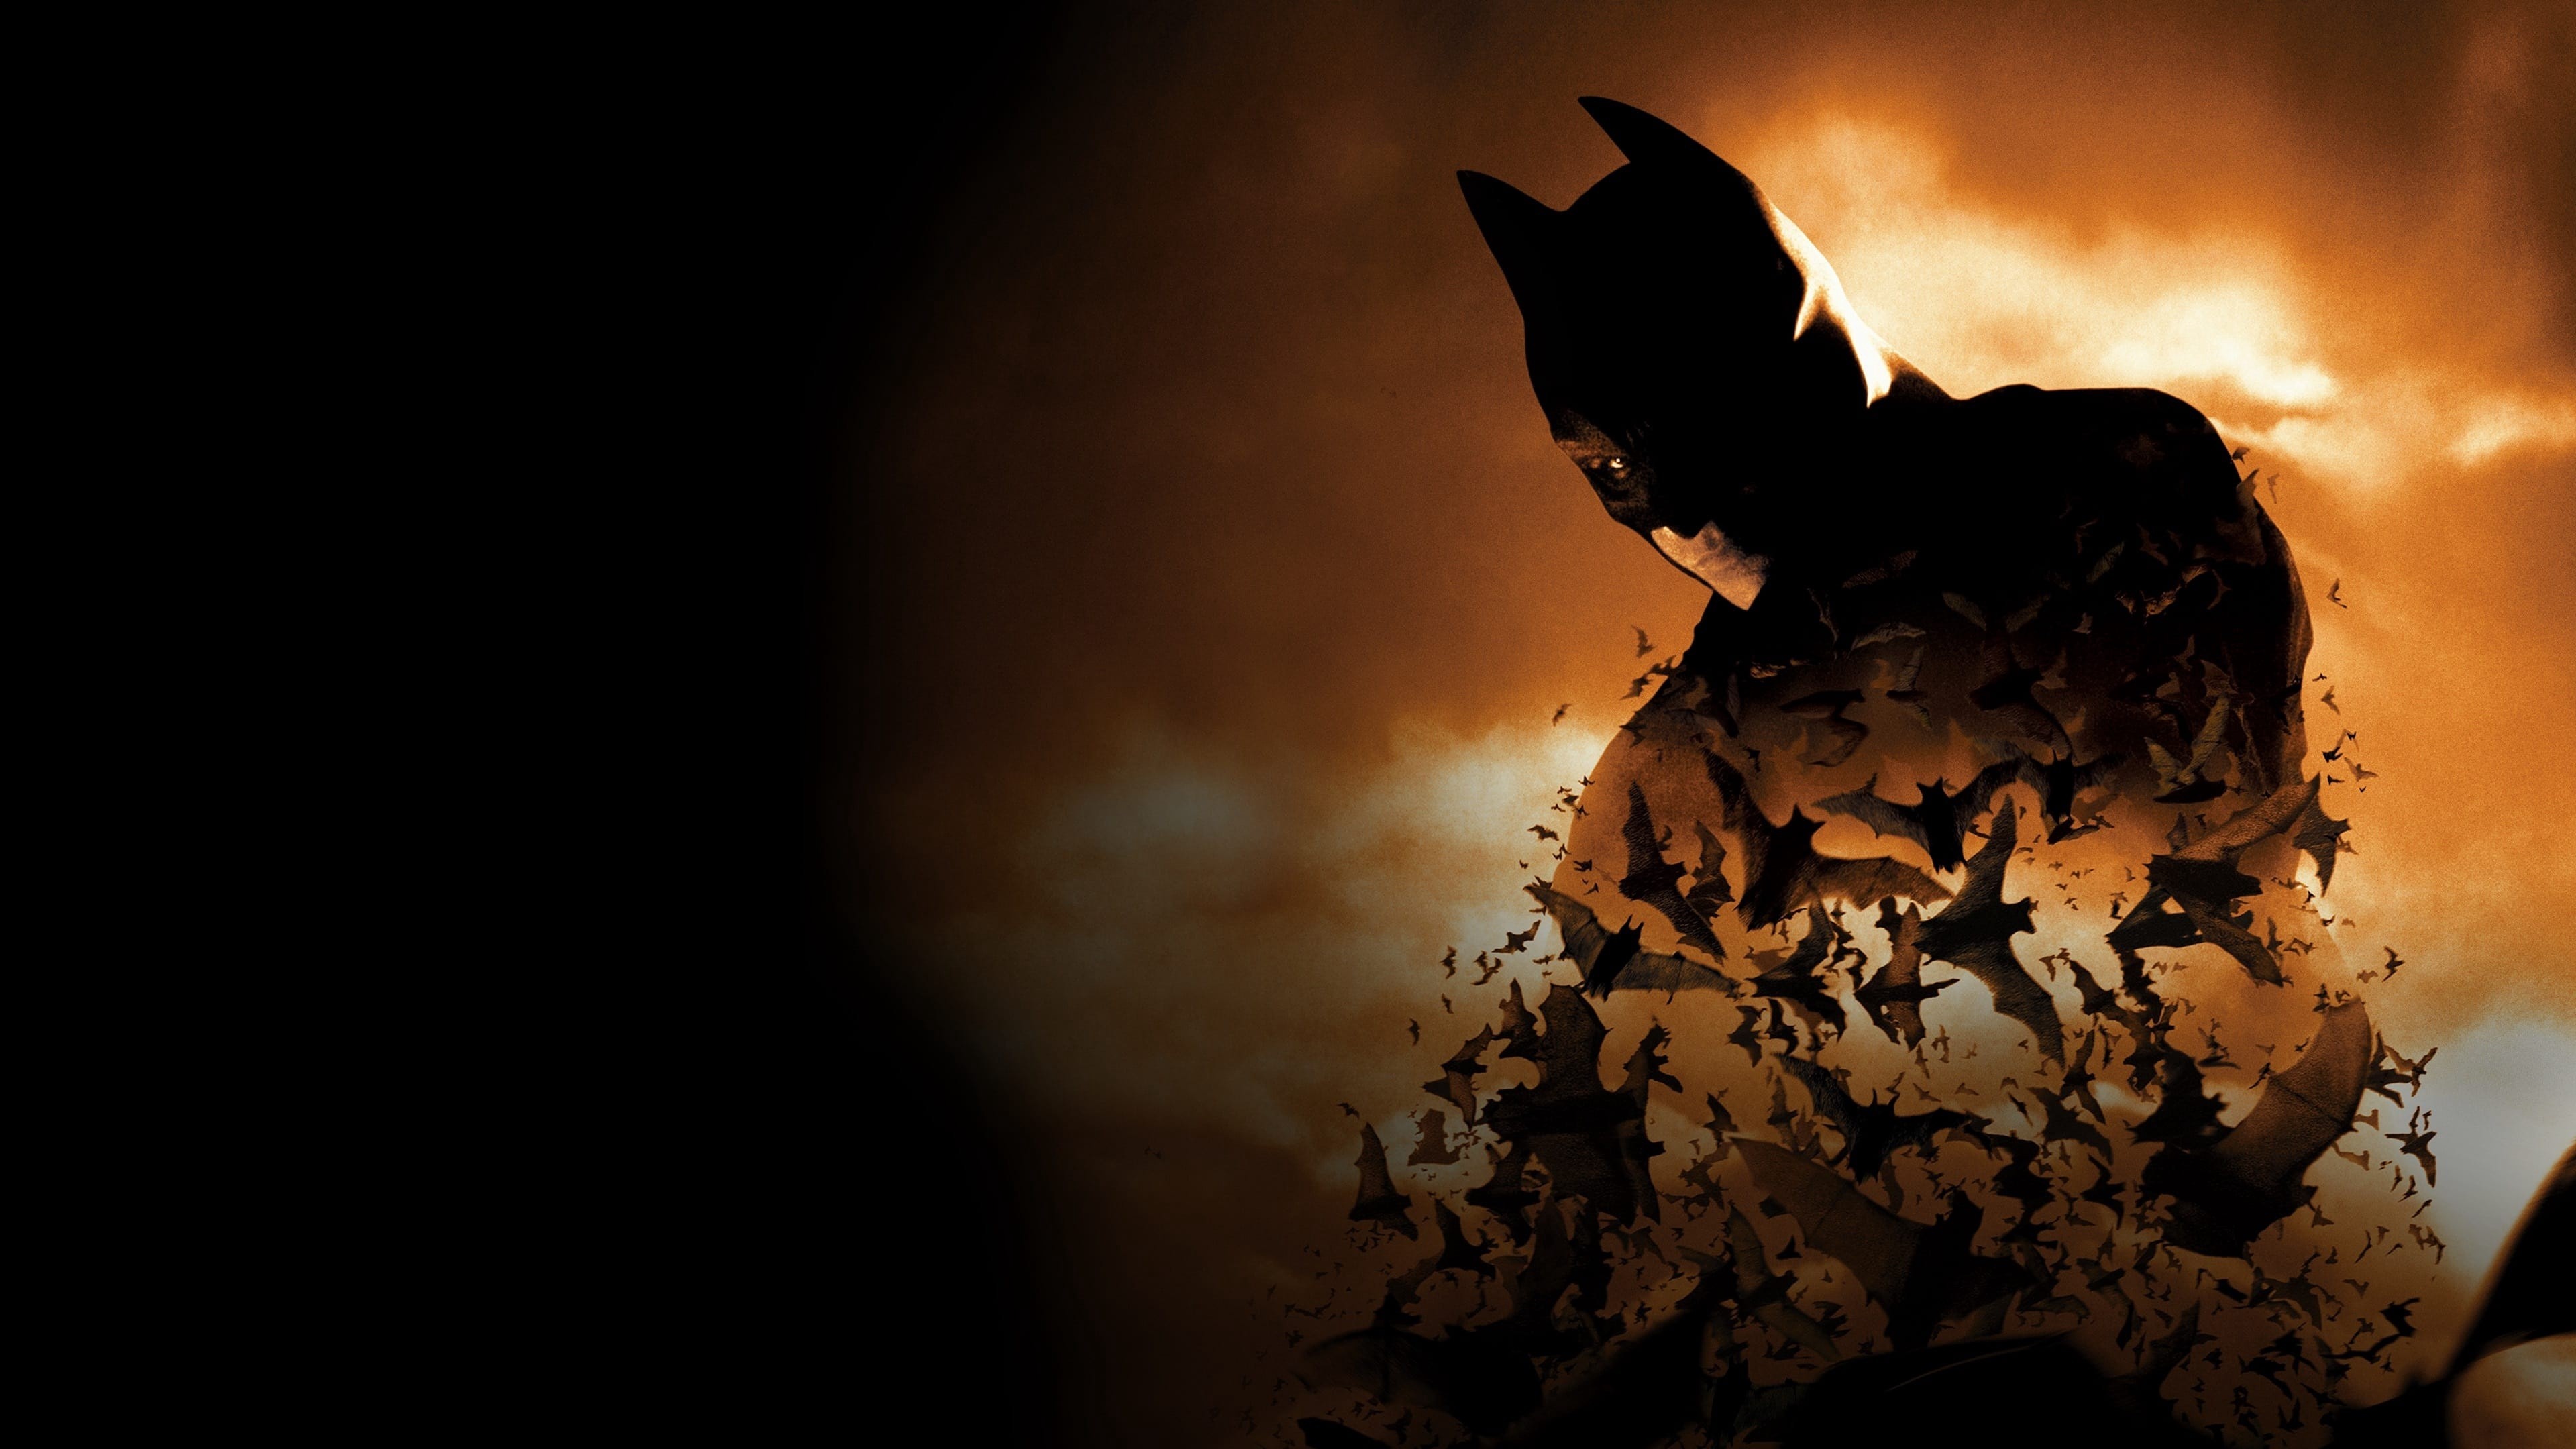 Batman начало. Бэтмен начало 2005. Бэтмен: начало (Batman begins) 2005 poster.